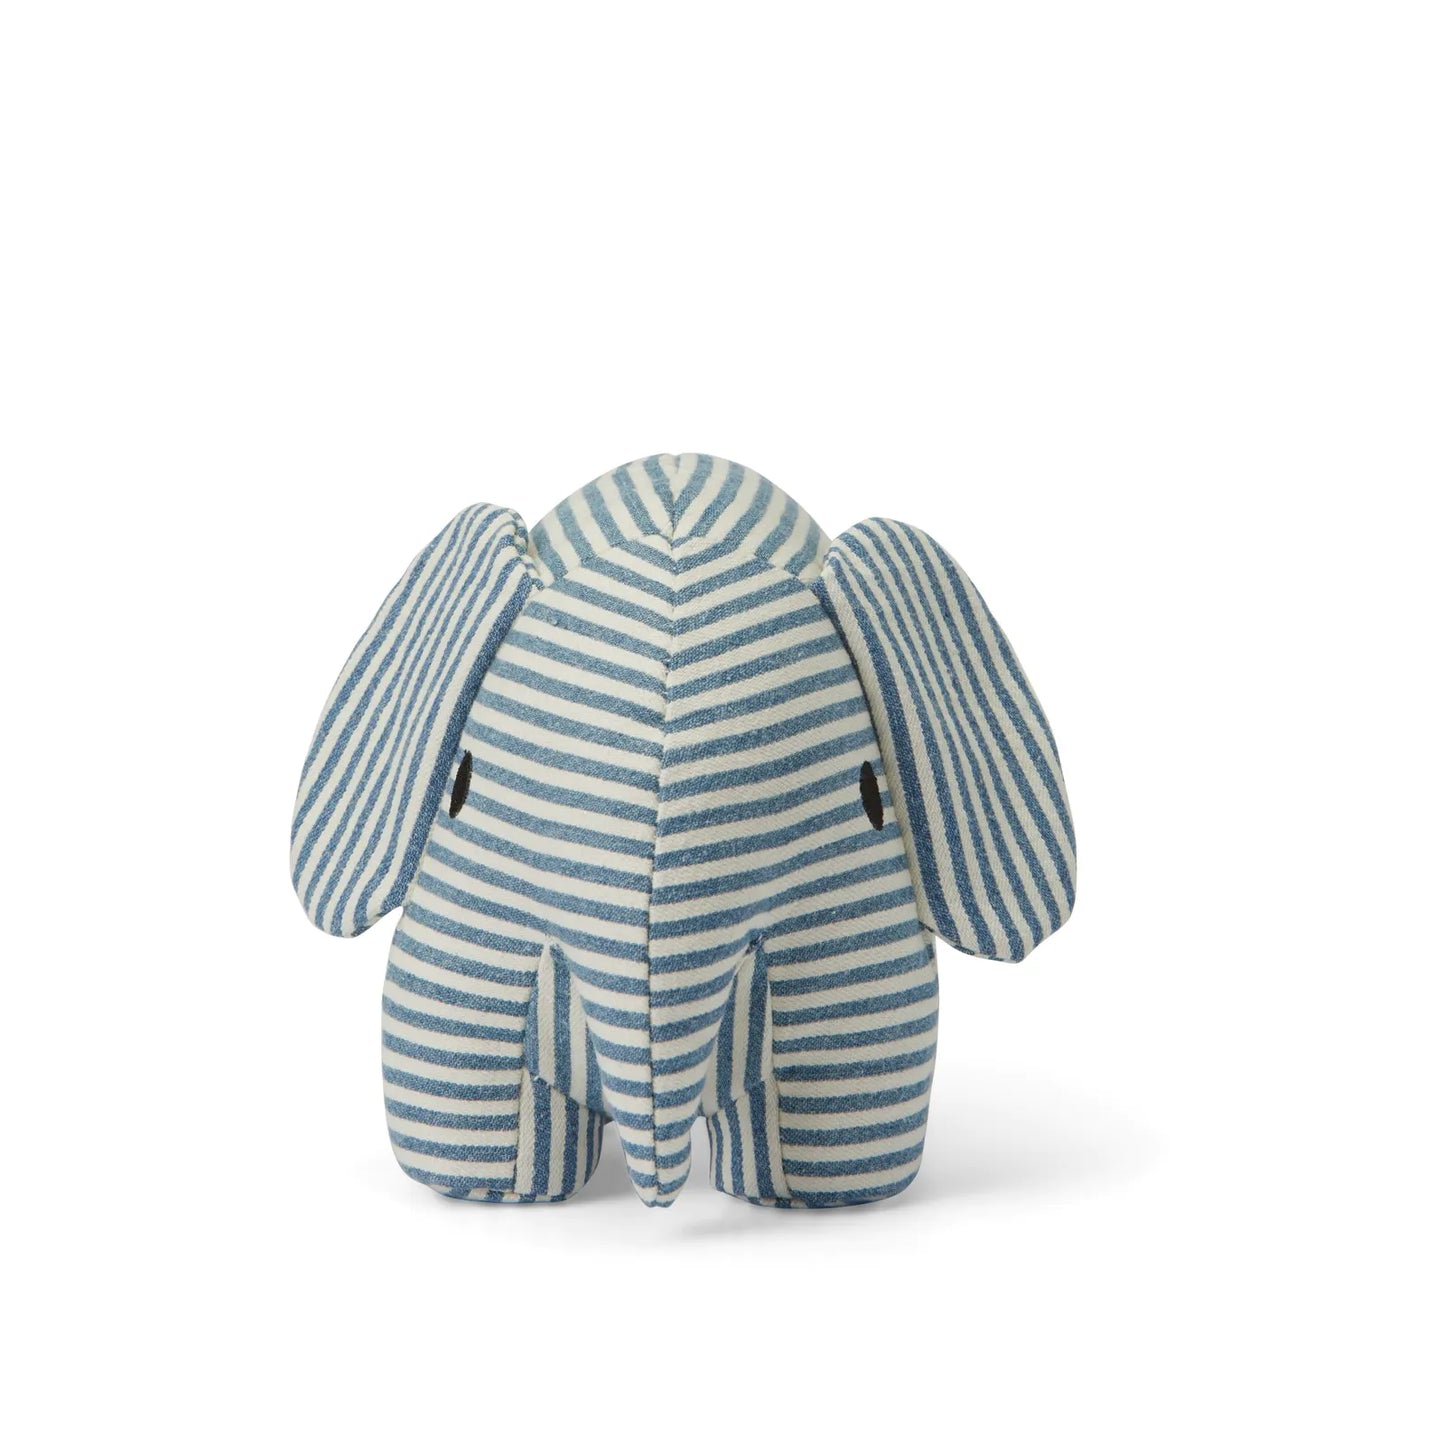 Miffy Elephant Denim Stripe - 17cm